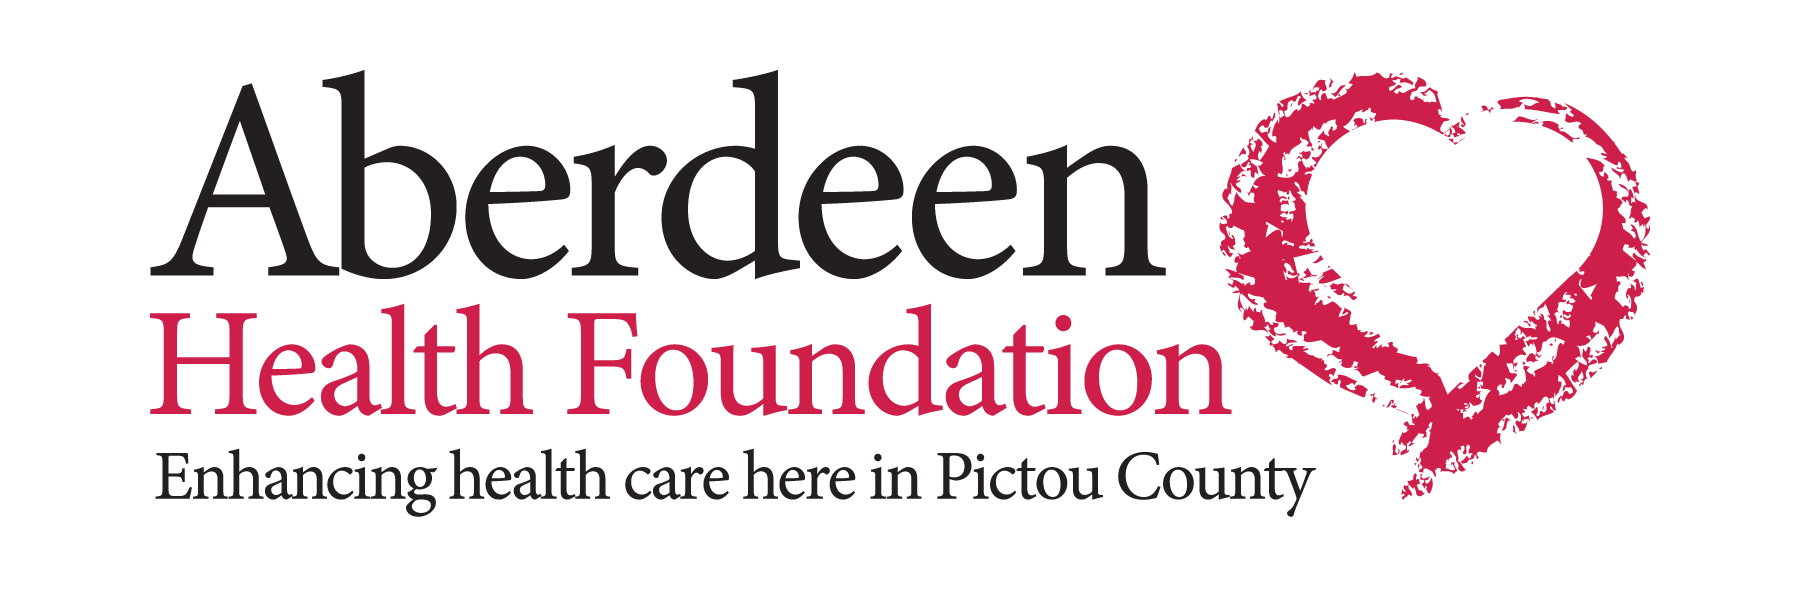 Aberdeen Health Foundation logo